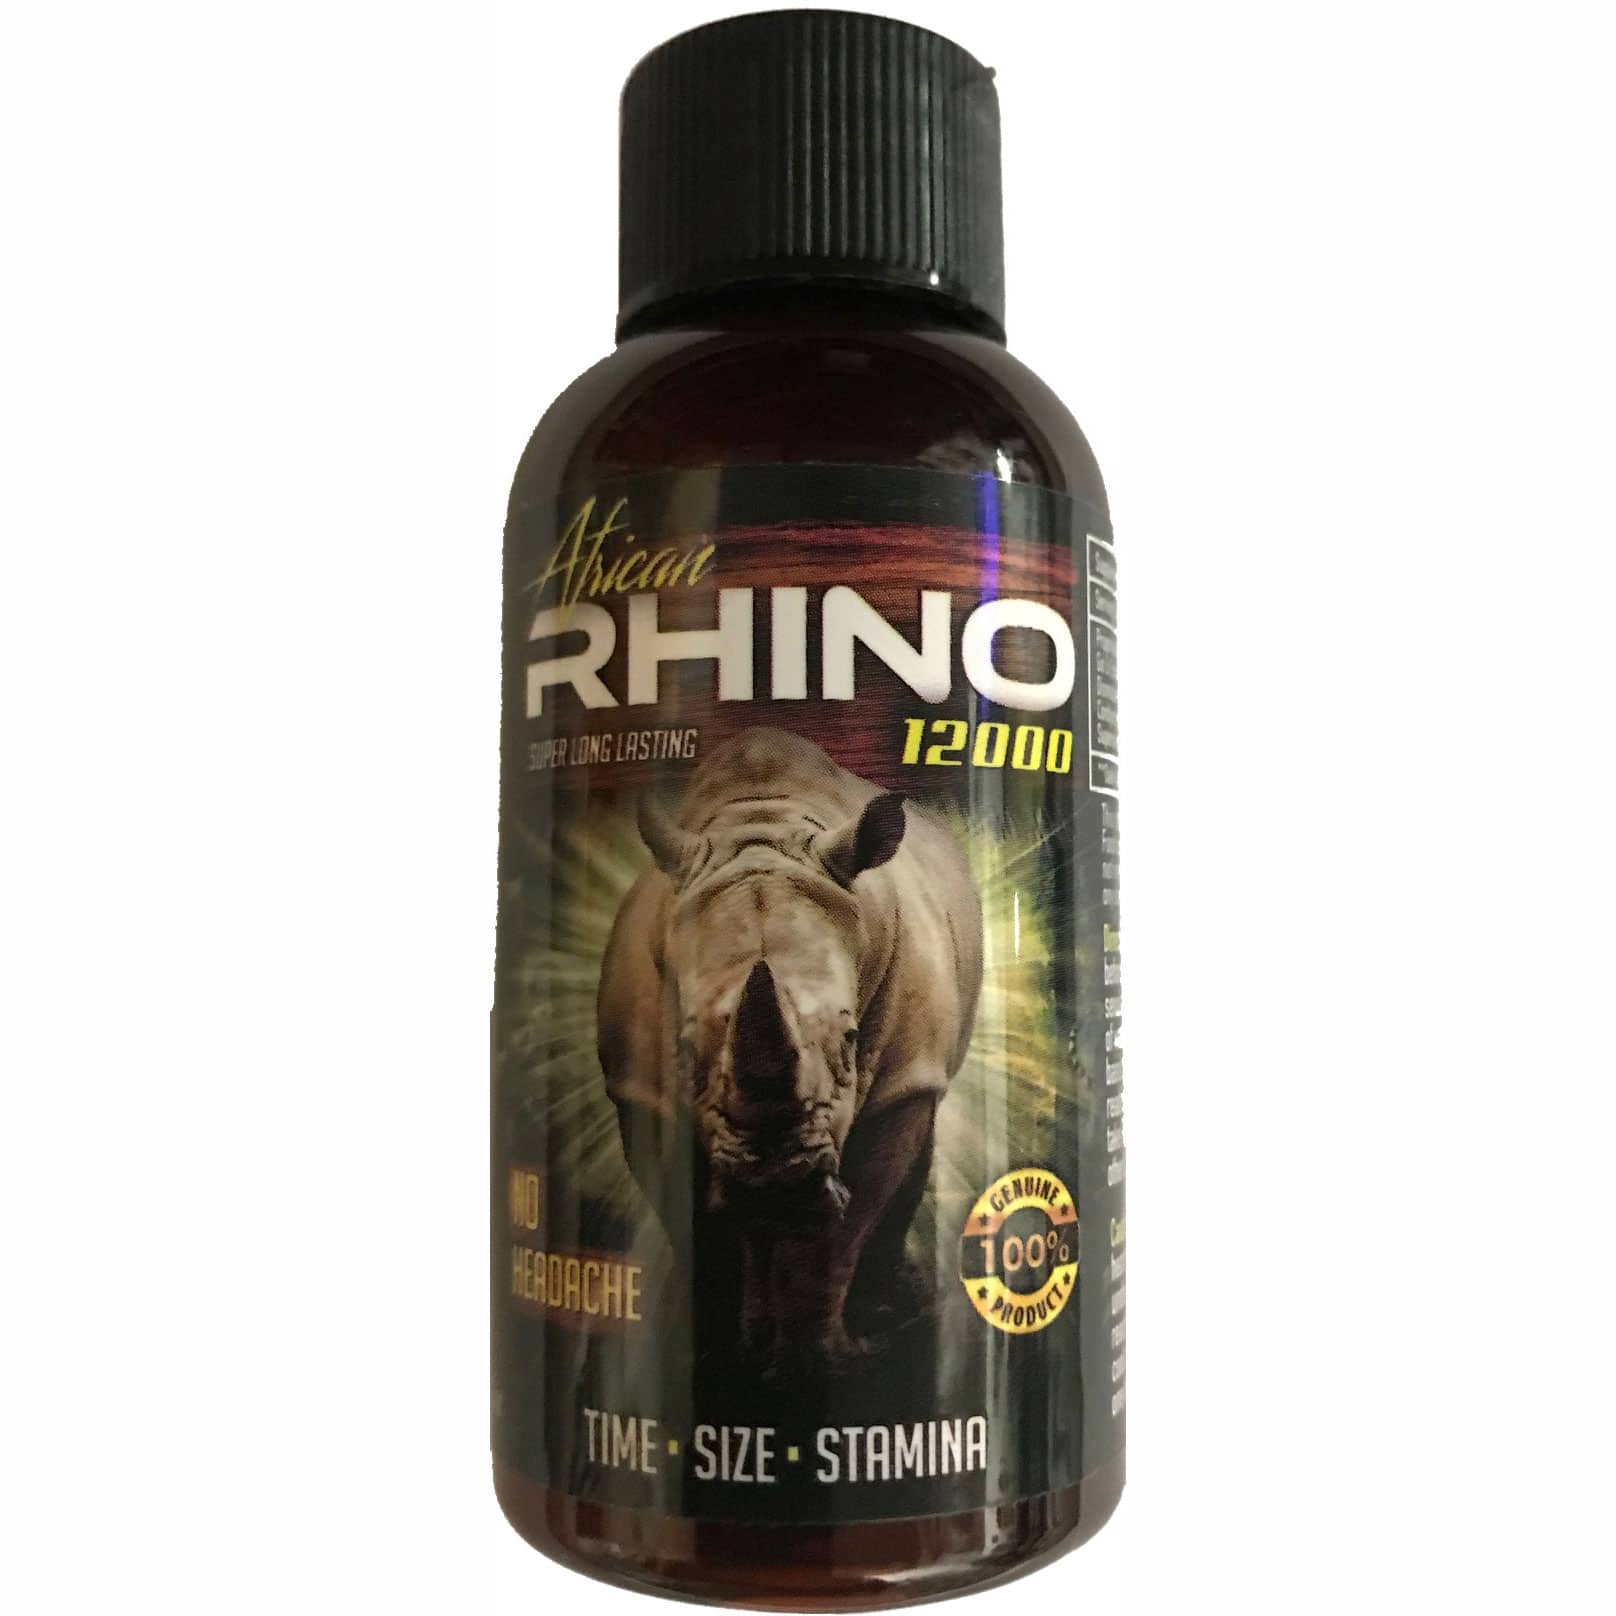 rhino 7 platinum 5000 does not work